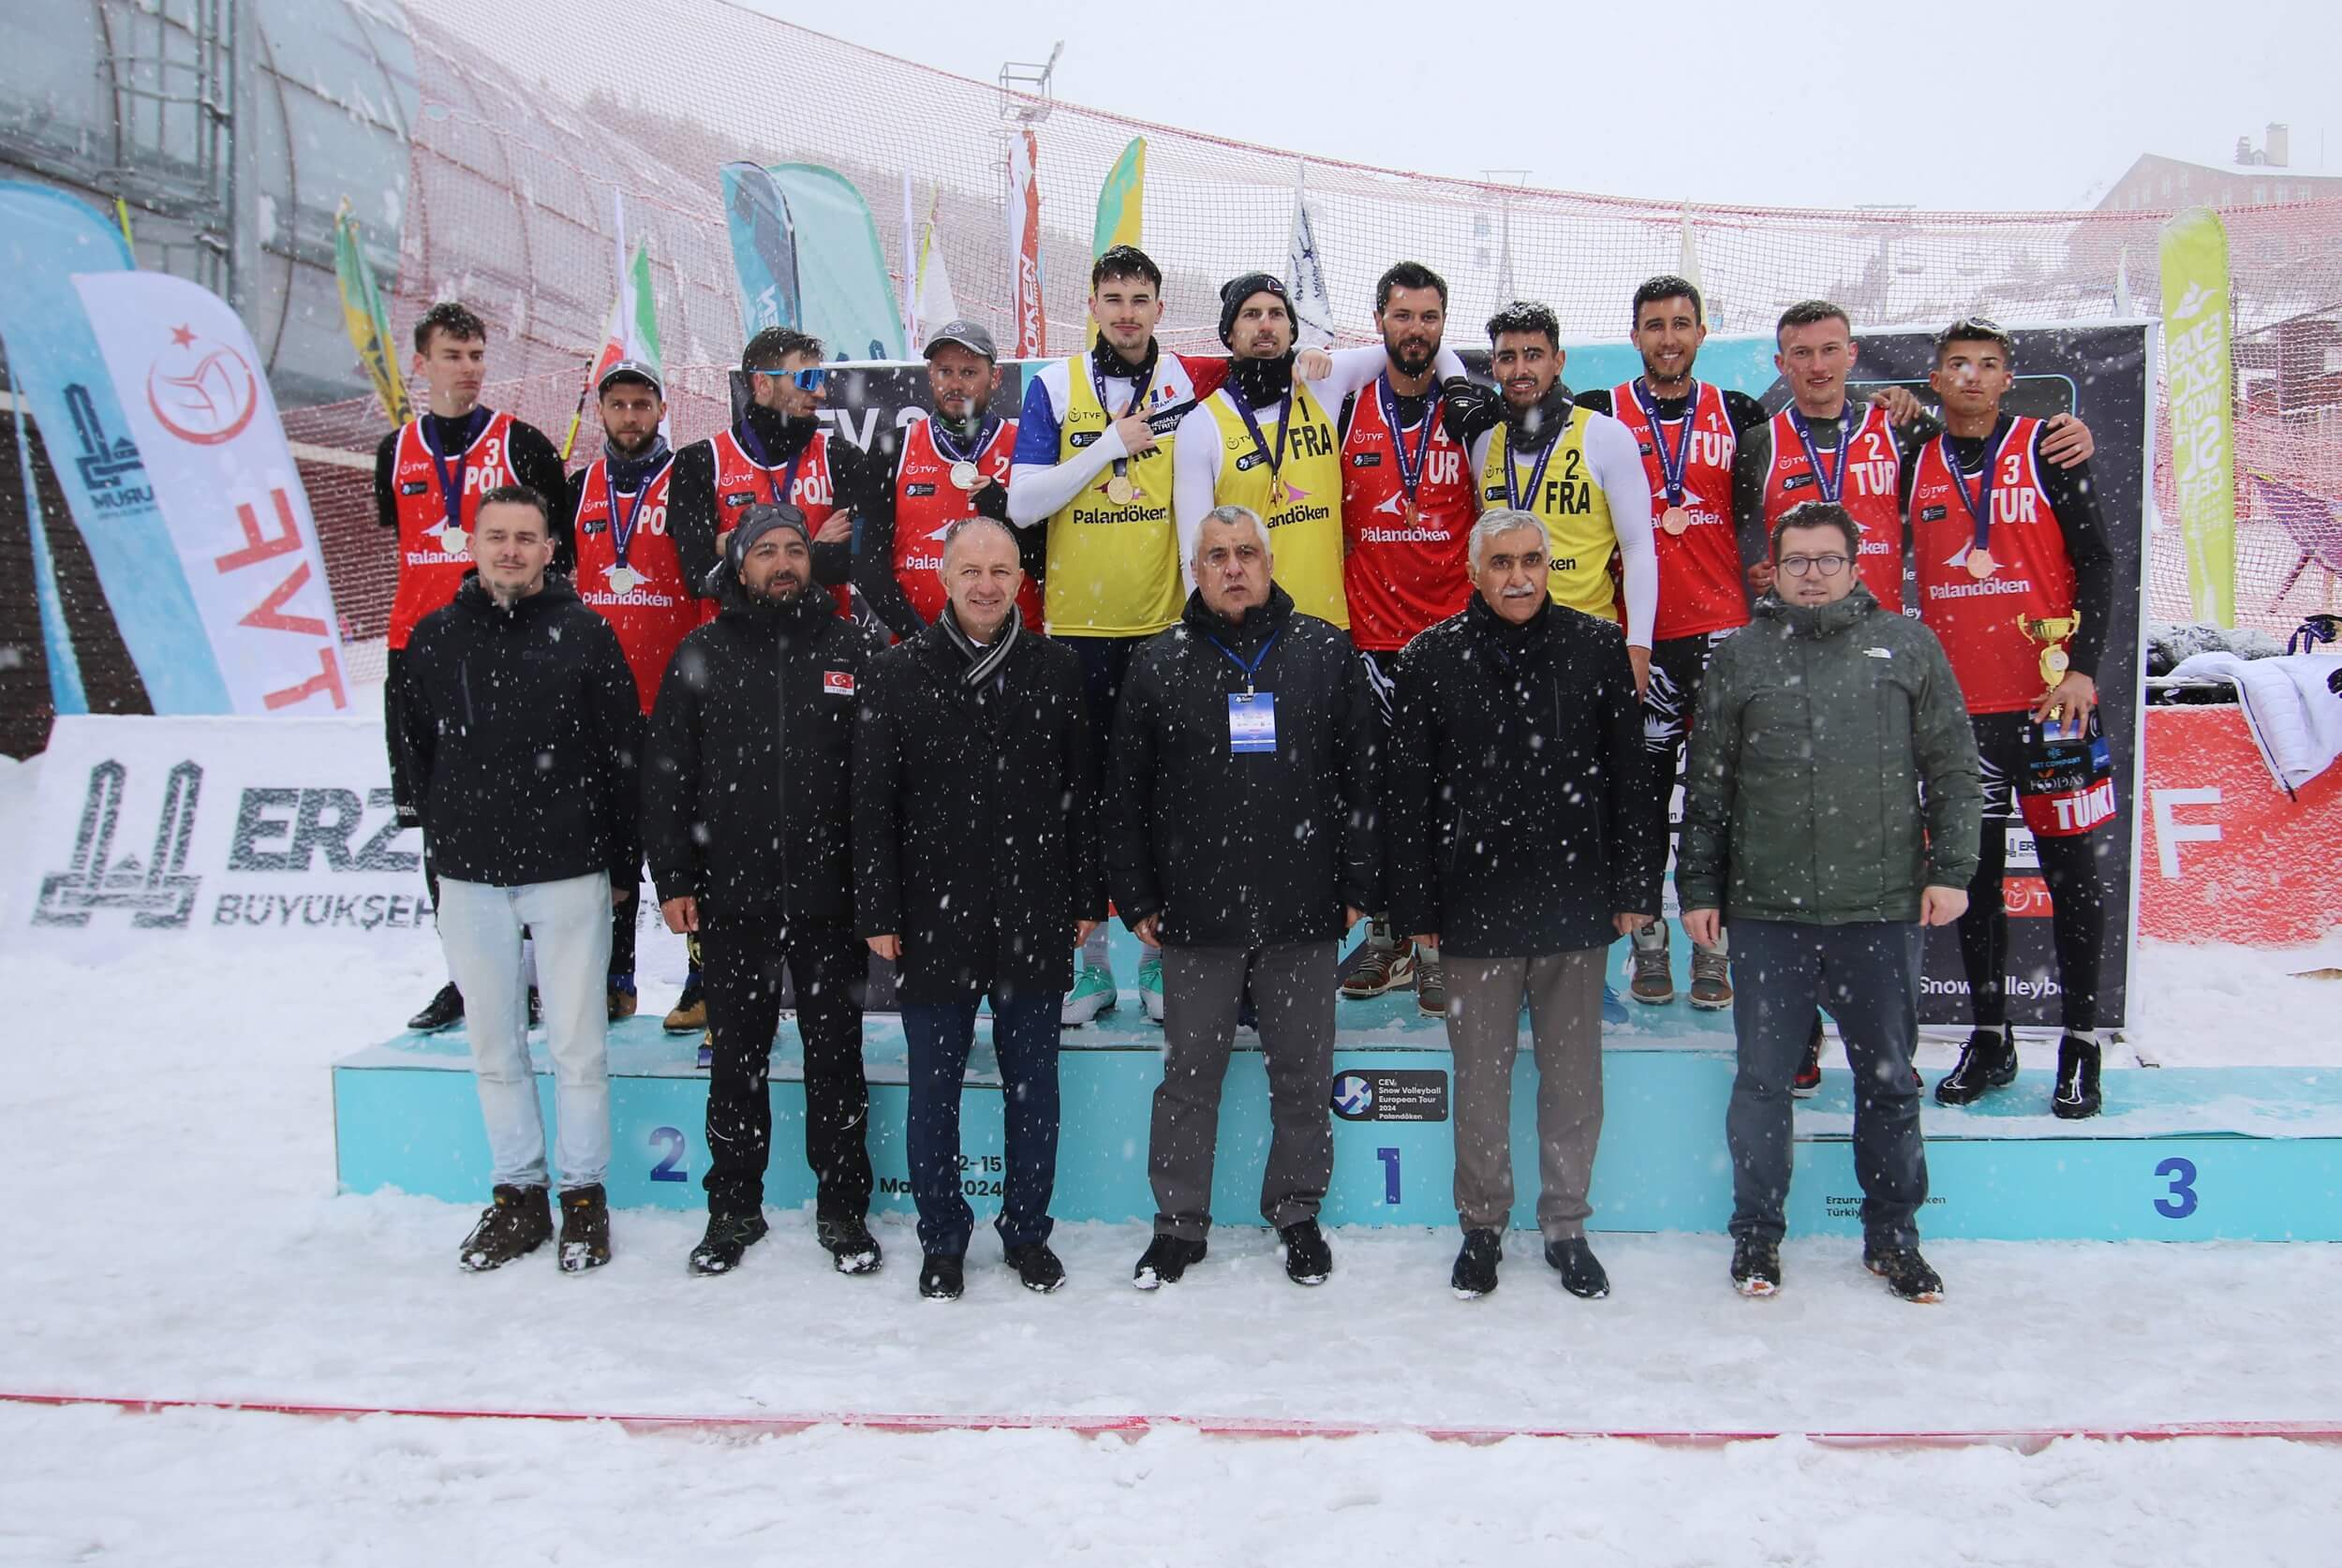 Millilerimiz Palandöken'de CEV Kar Voleybolu Avrupa Turu'nda 3 Madalya Kazandı!